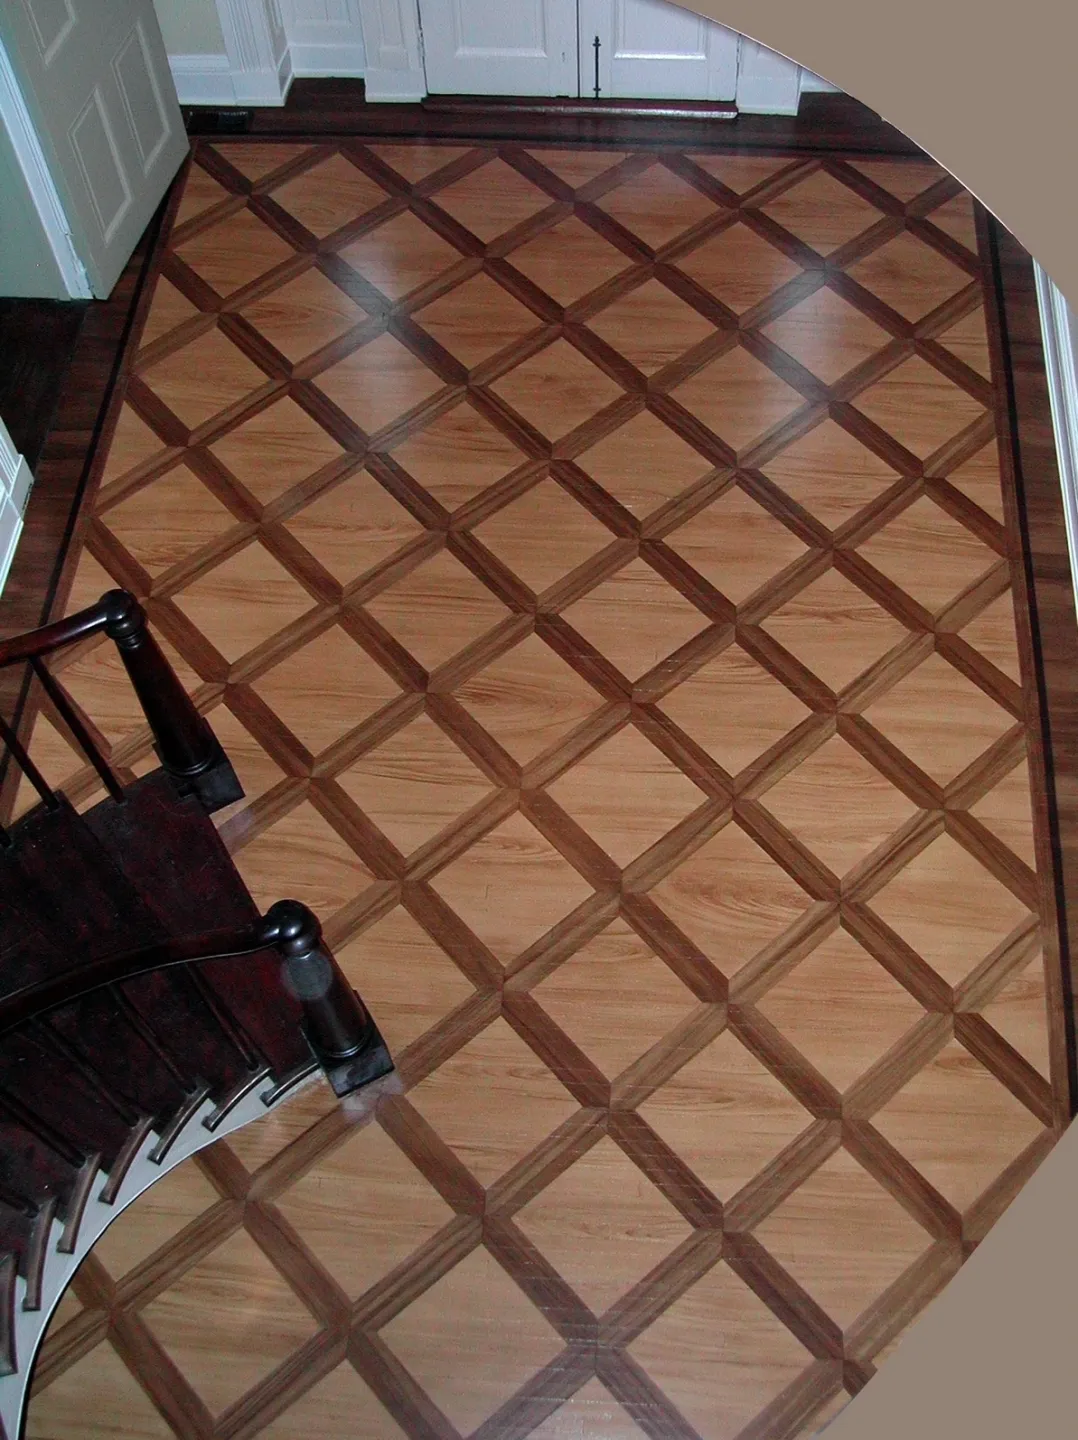 Interior view of floor tiles